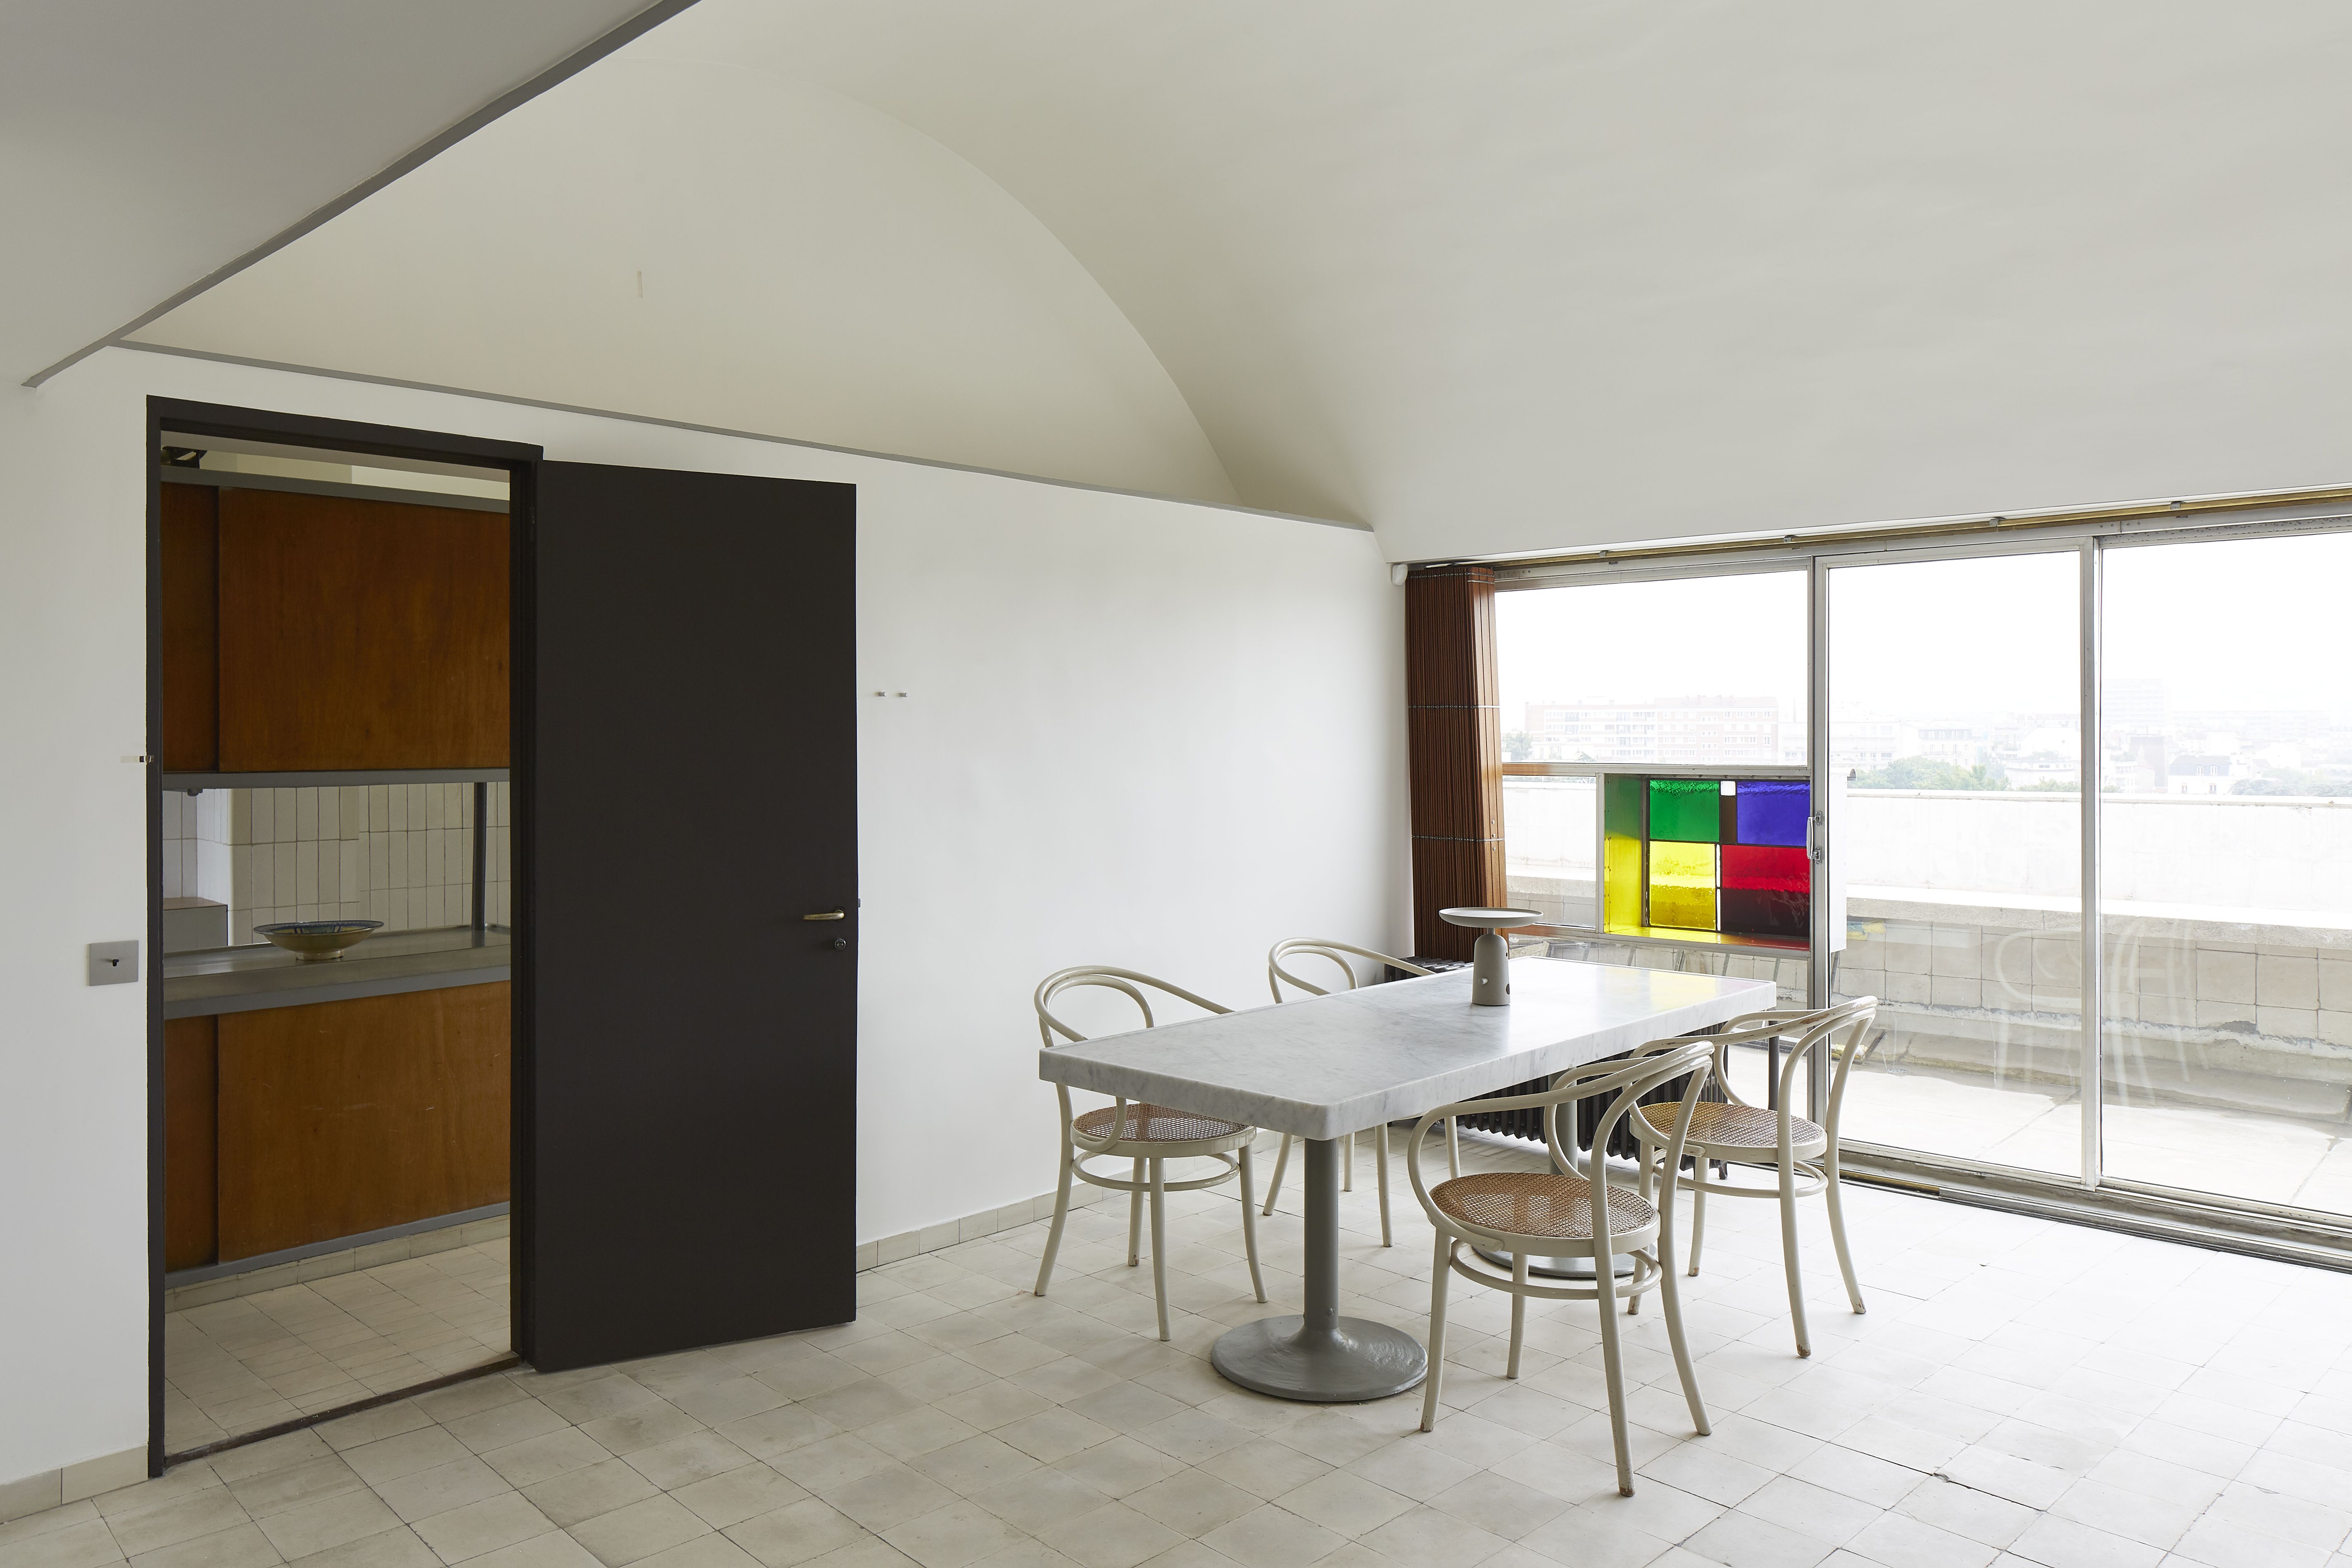 Nella casa/museo di Le Corbusier - immagine 10